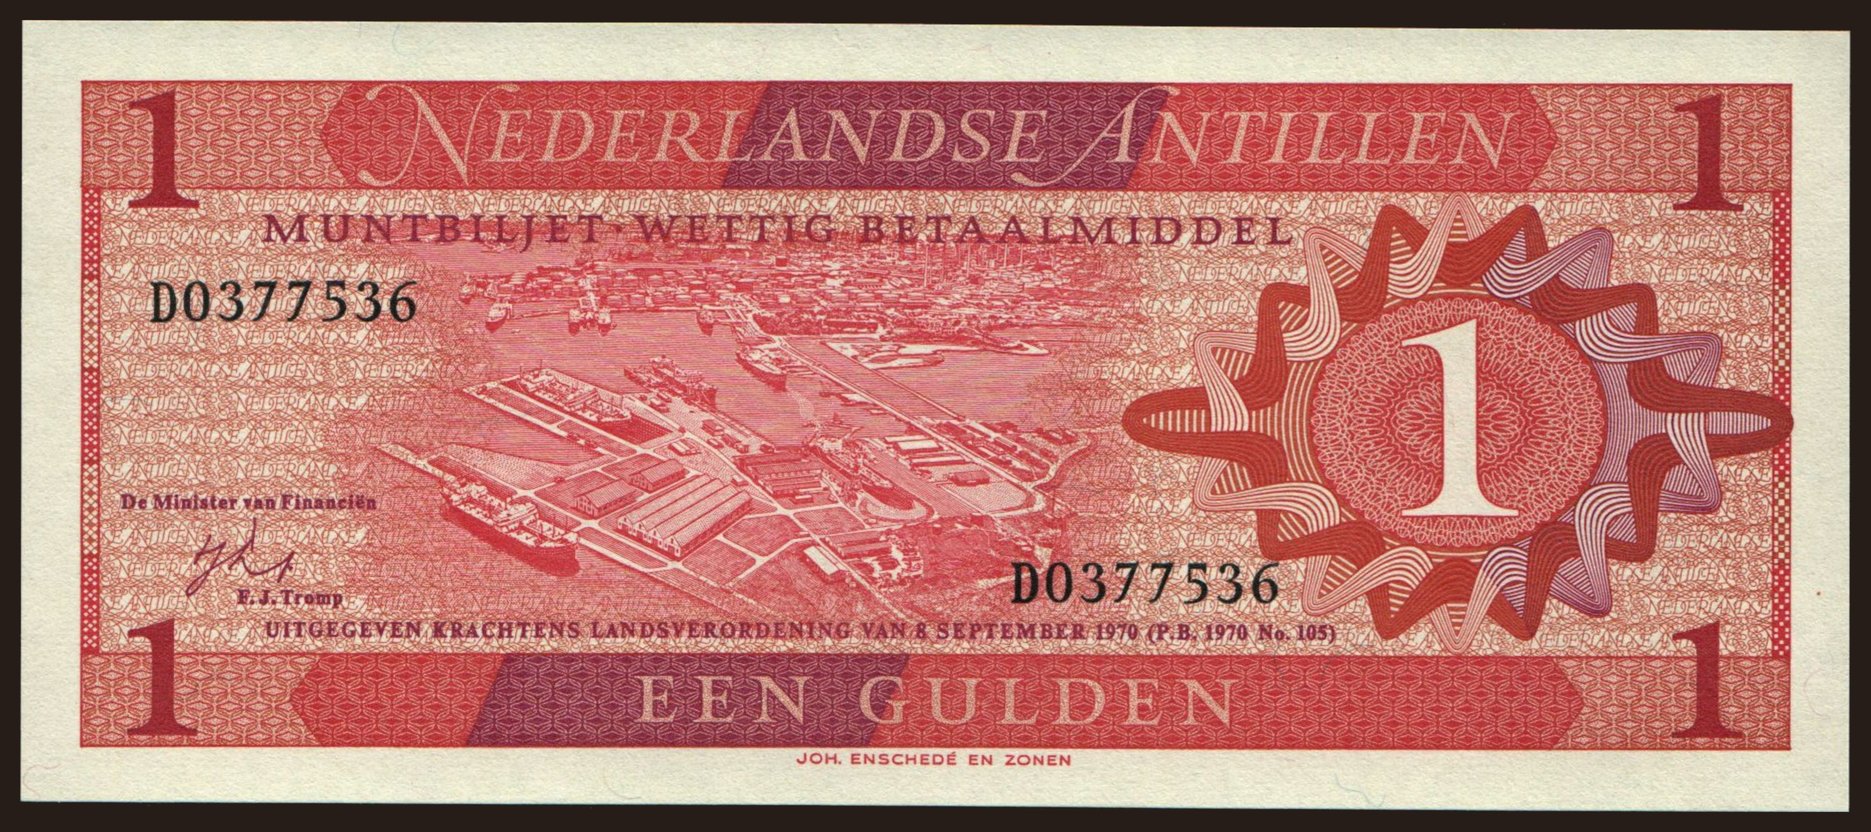 1 gulden, 1970